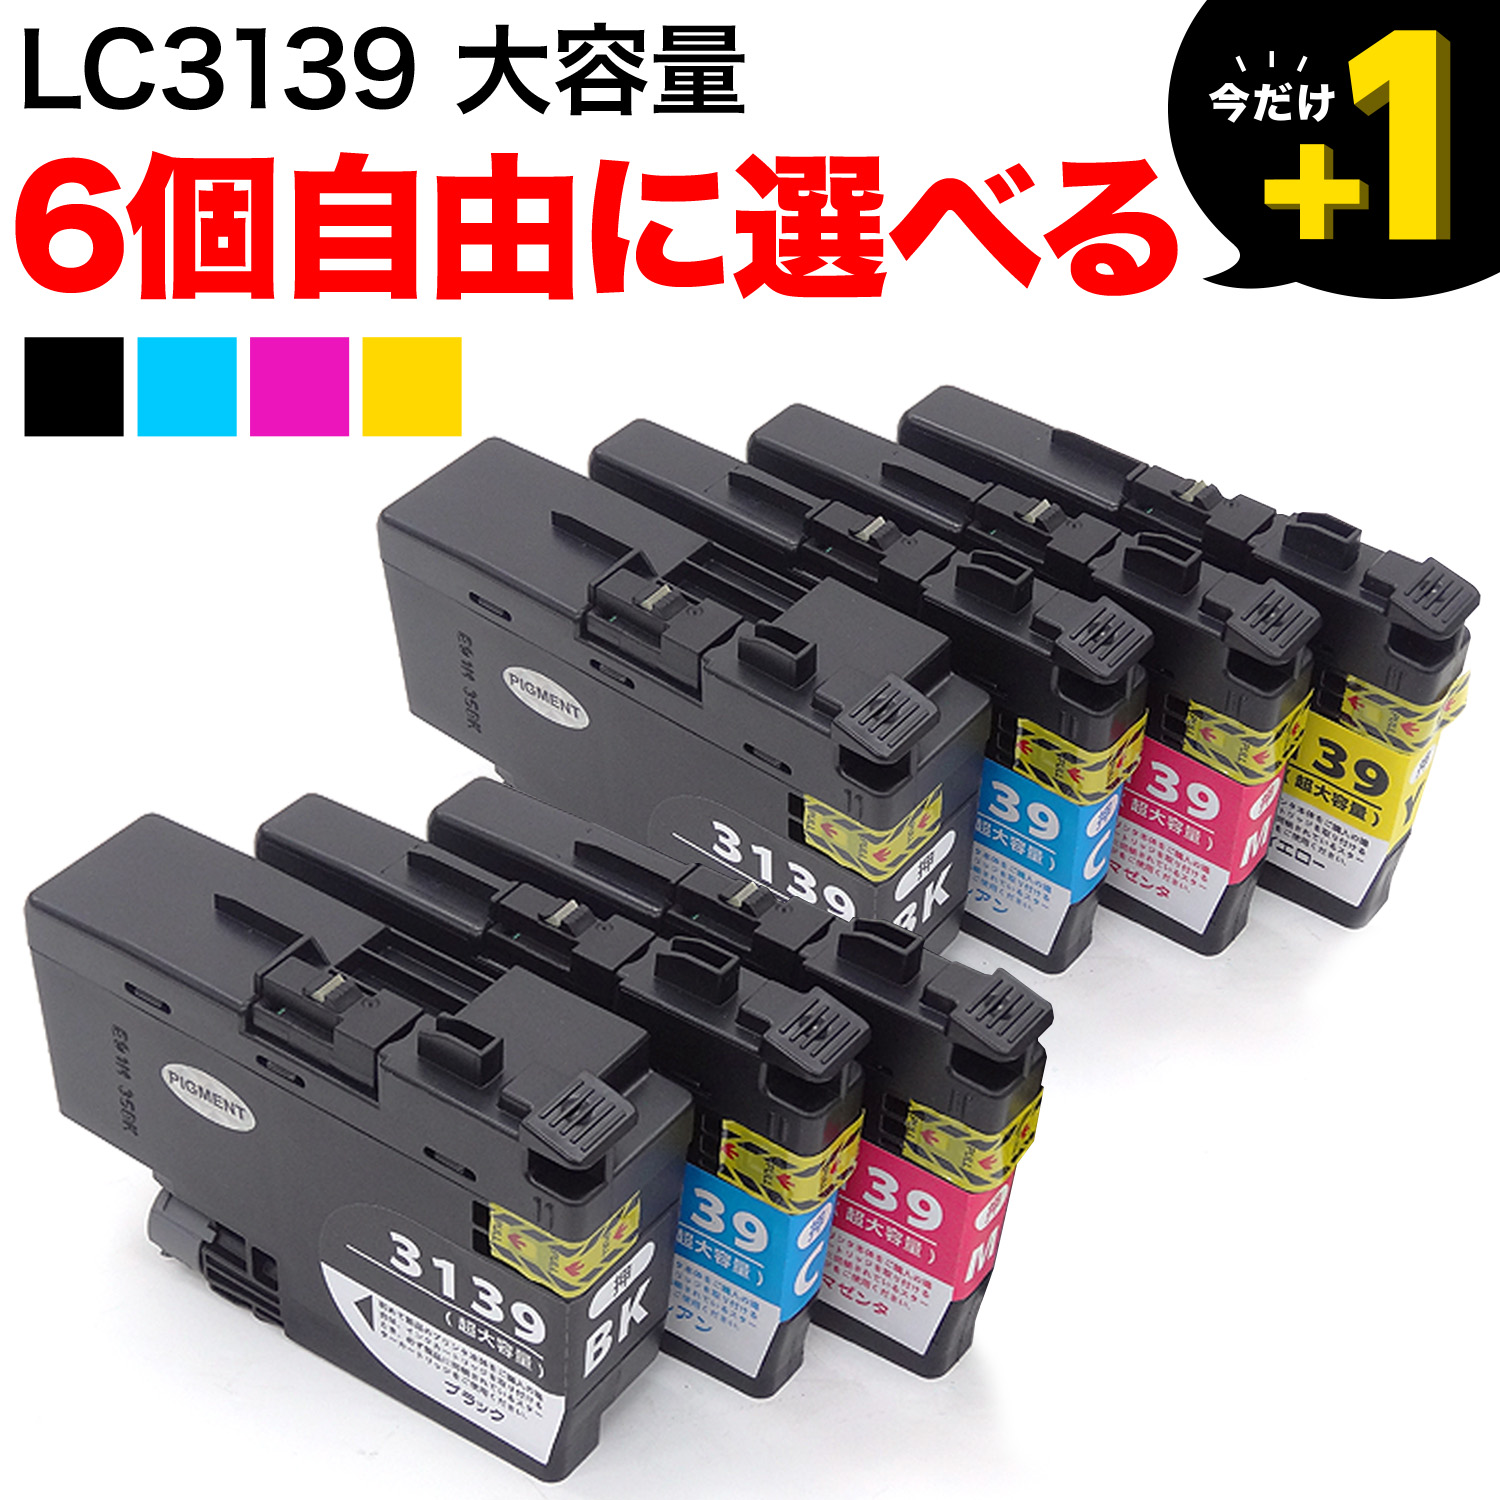 LC3139 ブラザー用 互換インクカートリッジ 自由選択6個セット フリーチョイス【送料無料】 選べる6個セット （品番：QR-FC-LC3139-6）詳細情報【こまもの本舗】